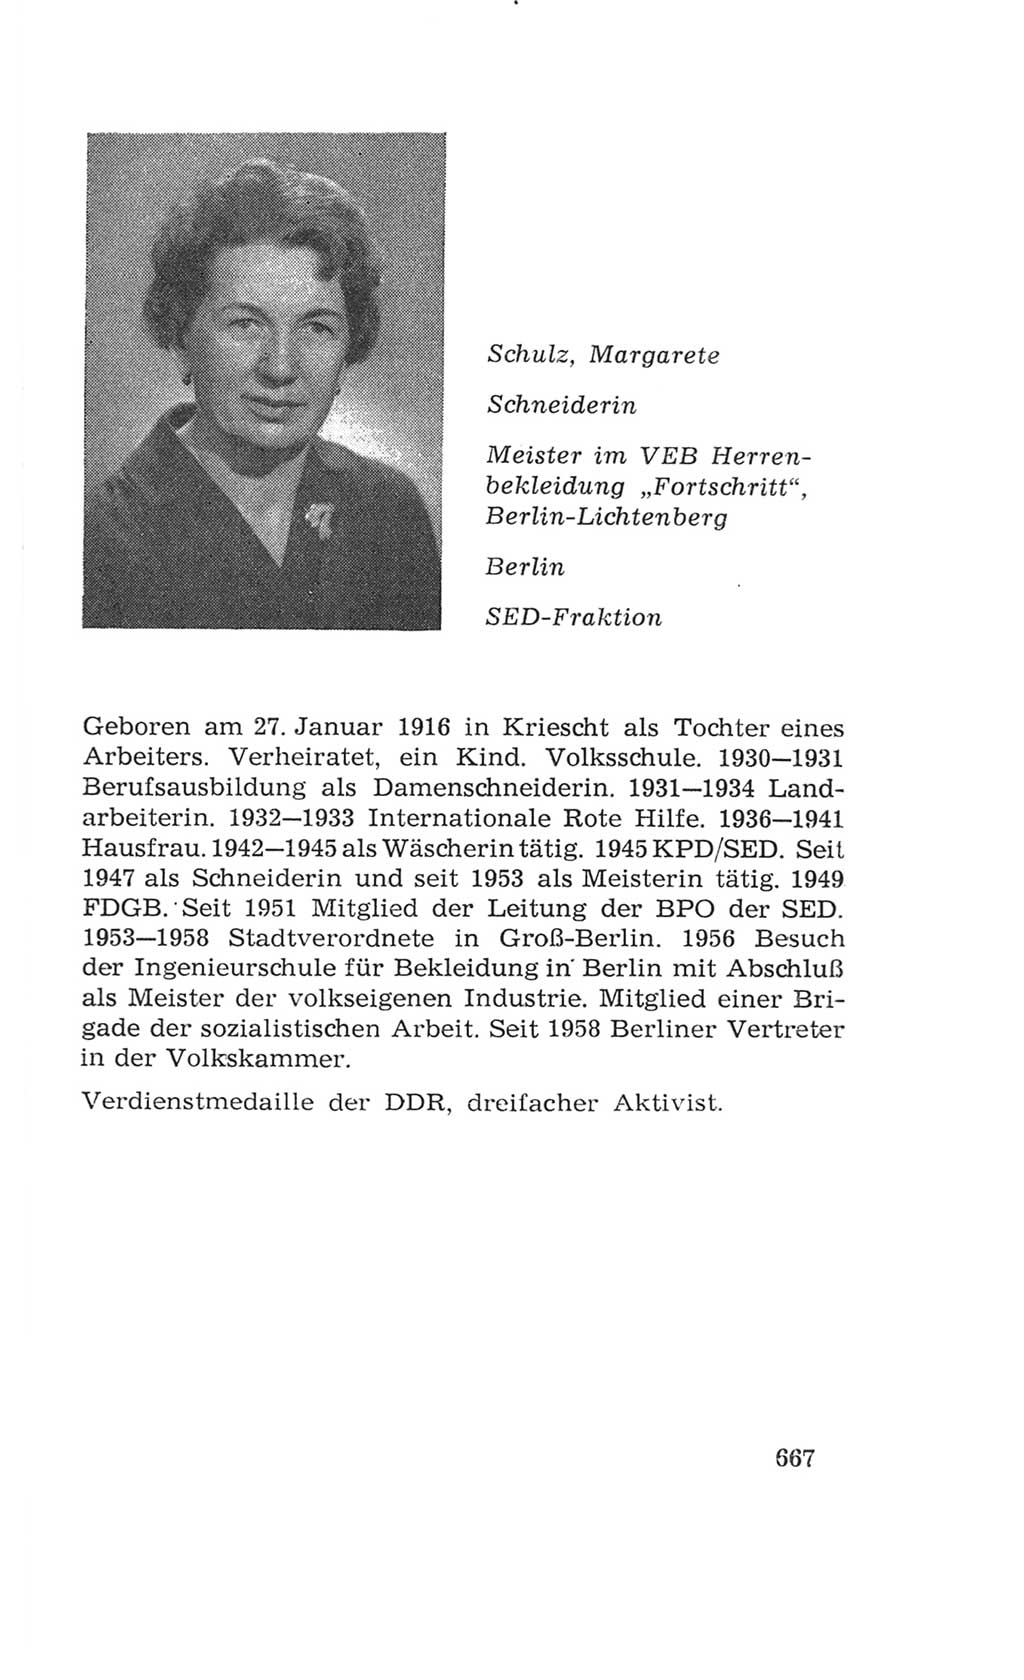 Volkskammer (VK) der Deutschen Demokratischen Republik (DDR), 4. Wahlperiode 1963-1967, Seite 667 (VK. DDR 4. WP. 1963-1967, S. 667)